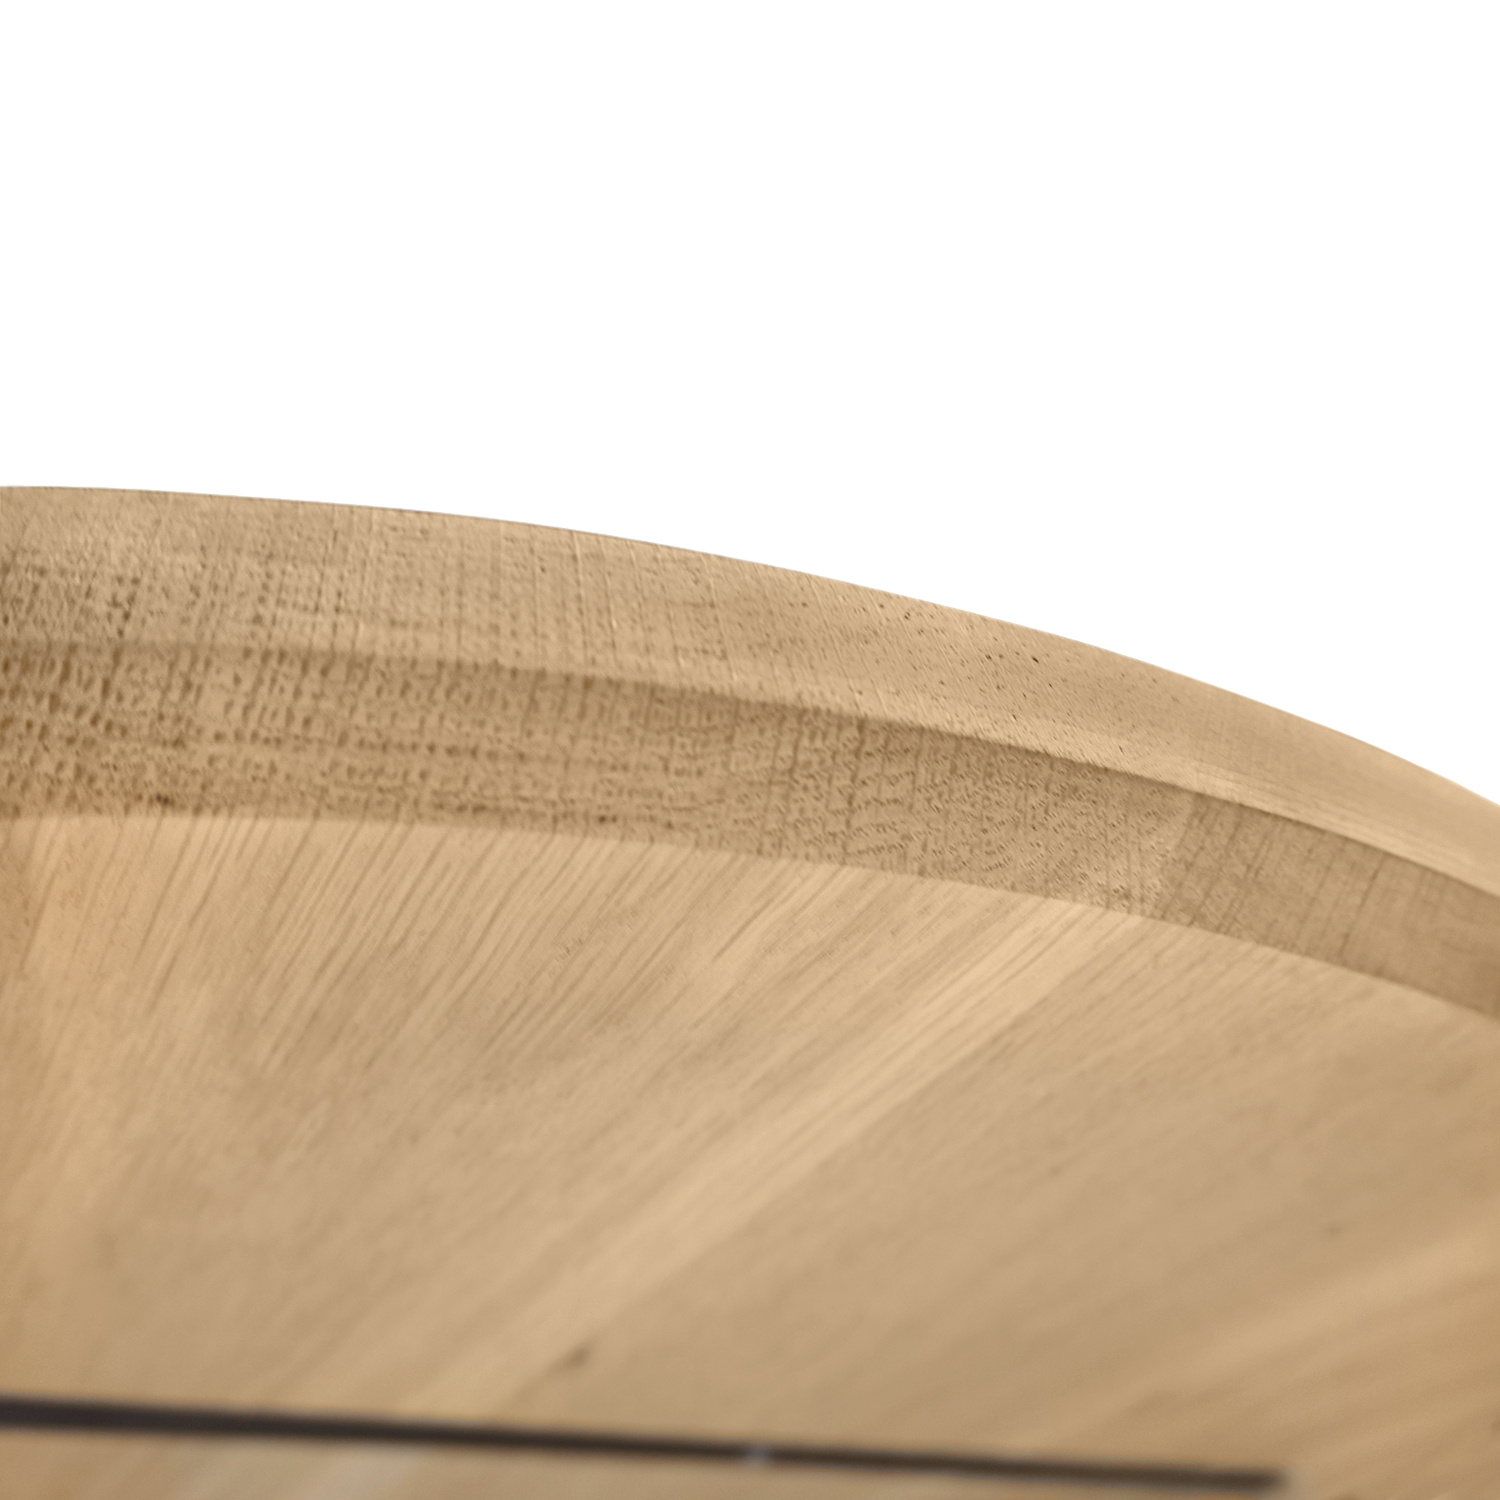  Tischplatte Wildeiche oval - 3 cm dick (1-Schicht) - XXL Lamellen (14-20 cm breit) - Asteiche (rustikal) - Tischplatte ovale / ellipse Eiche - verleimt & künstlich getrocknet (HF 8-12%) - verschiedene Größen